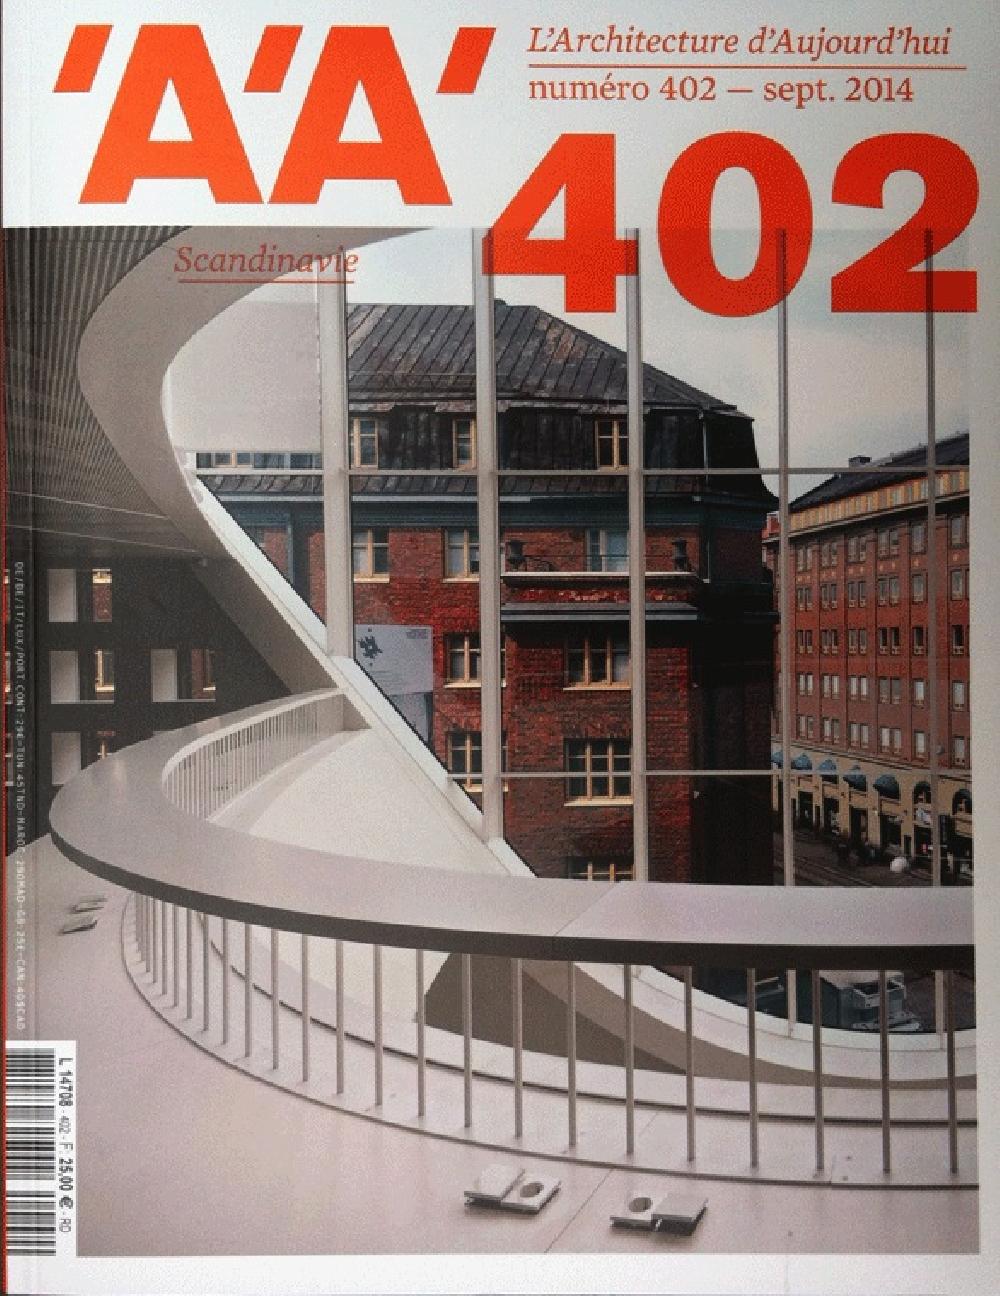 L'architecture d'aujourd'hui n°402